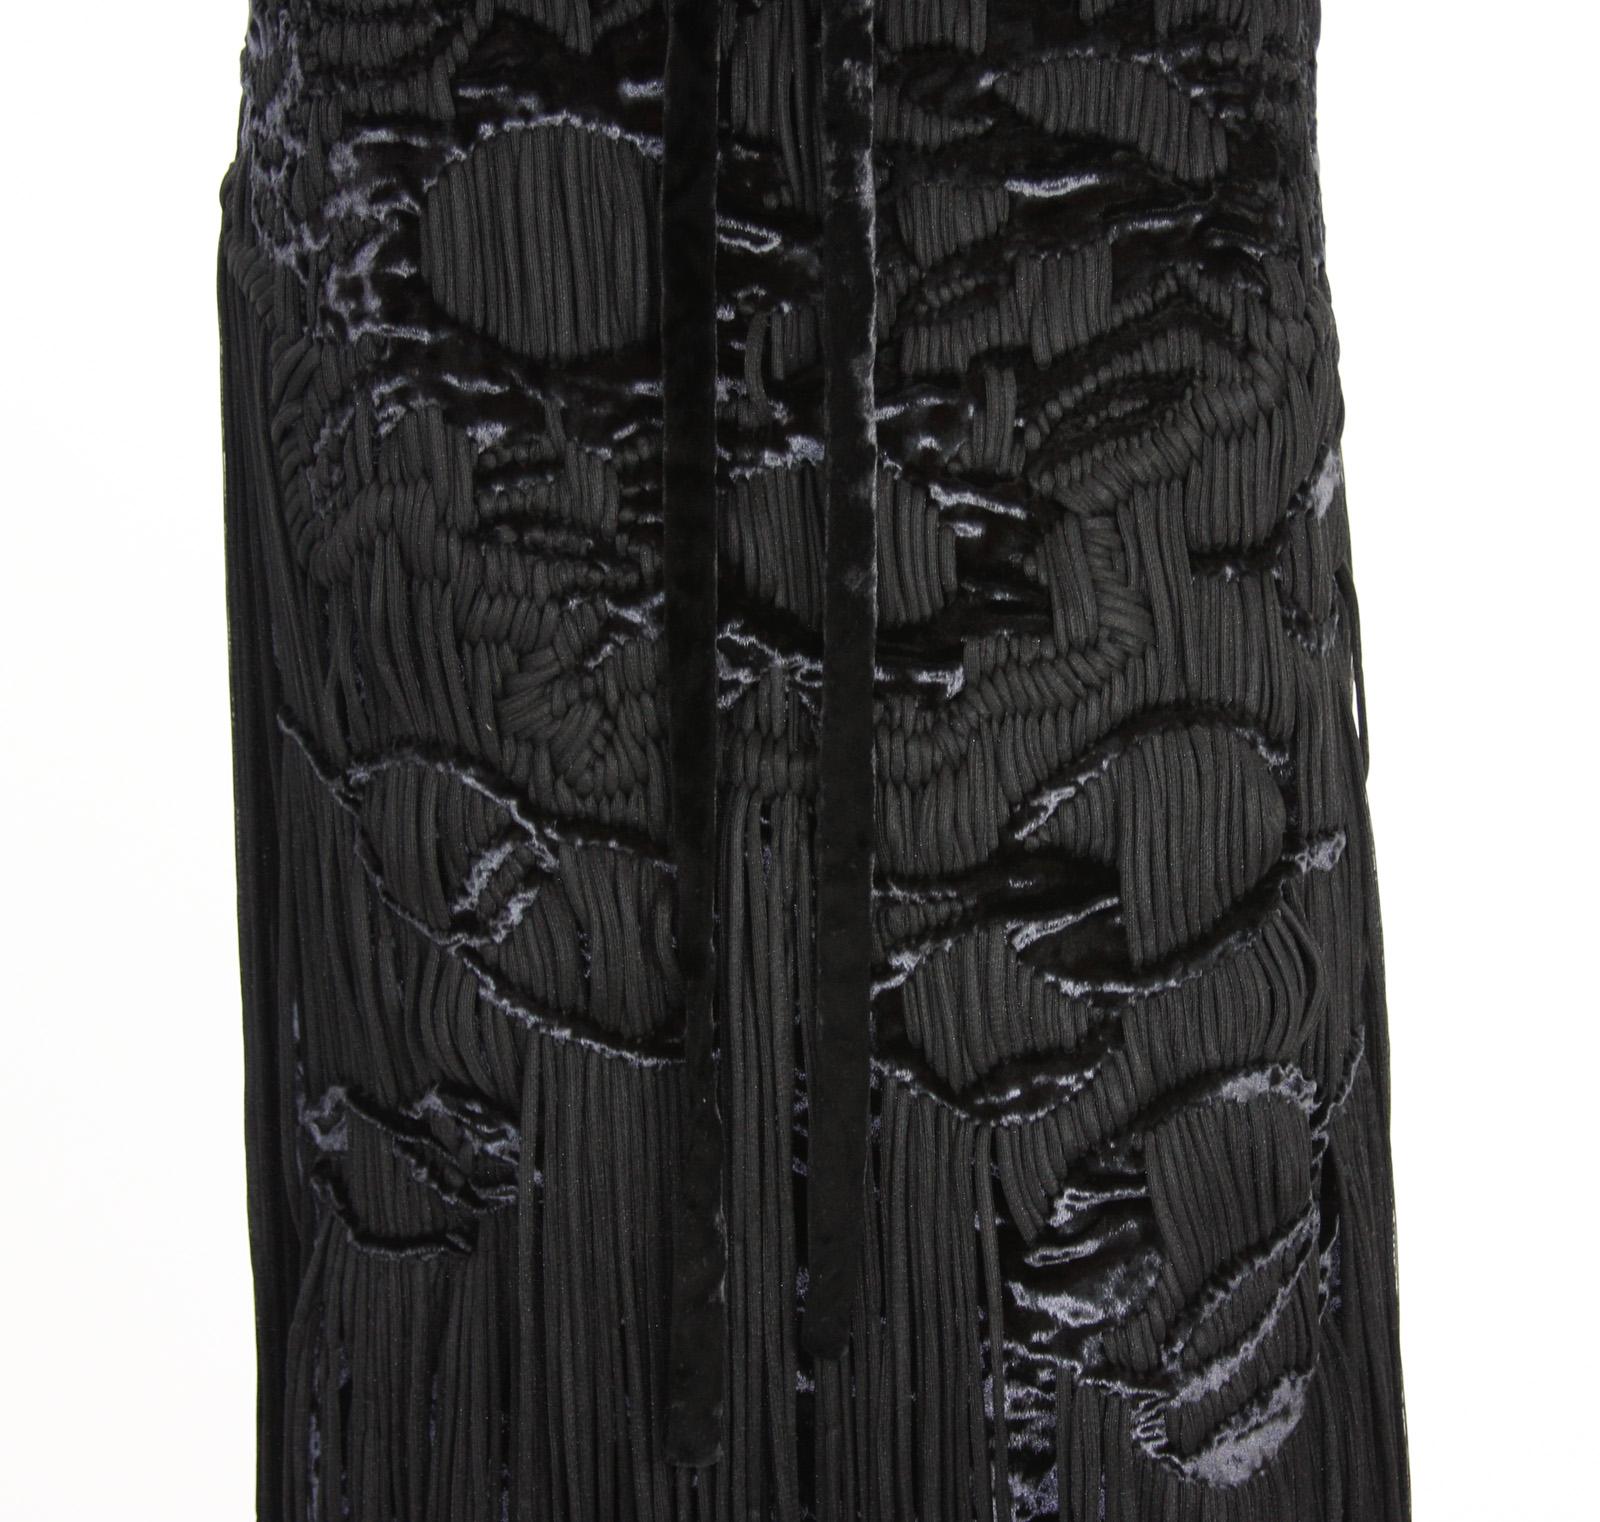 Tom Ford for Yves Saint Laurent 2001-2003 Collection Silk Top Velvet Skirt Suit  For Sale 10